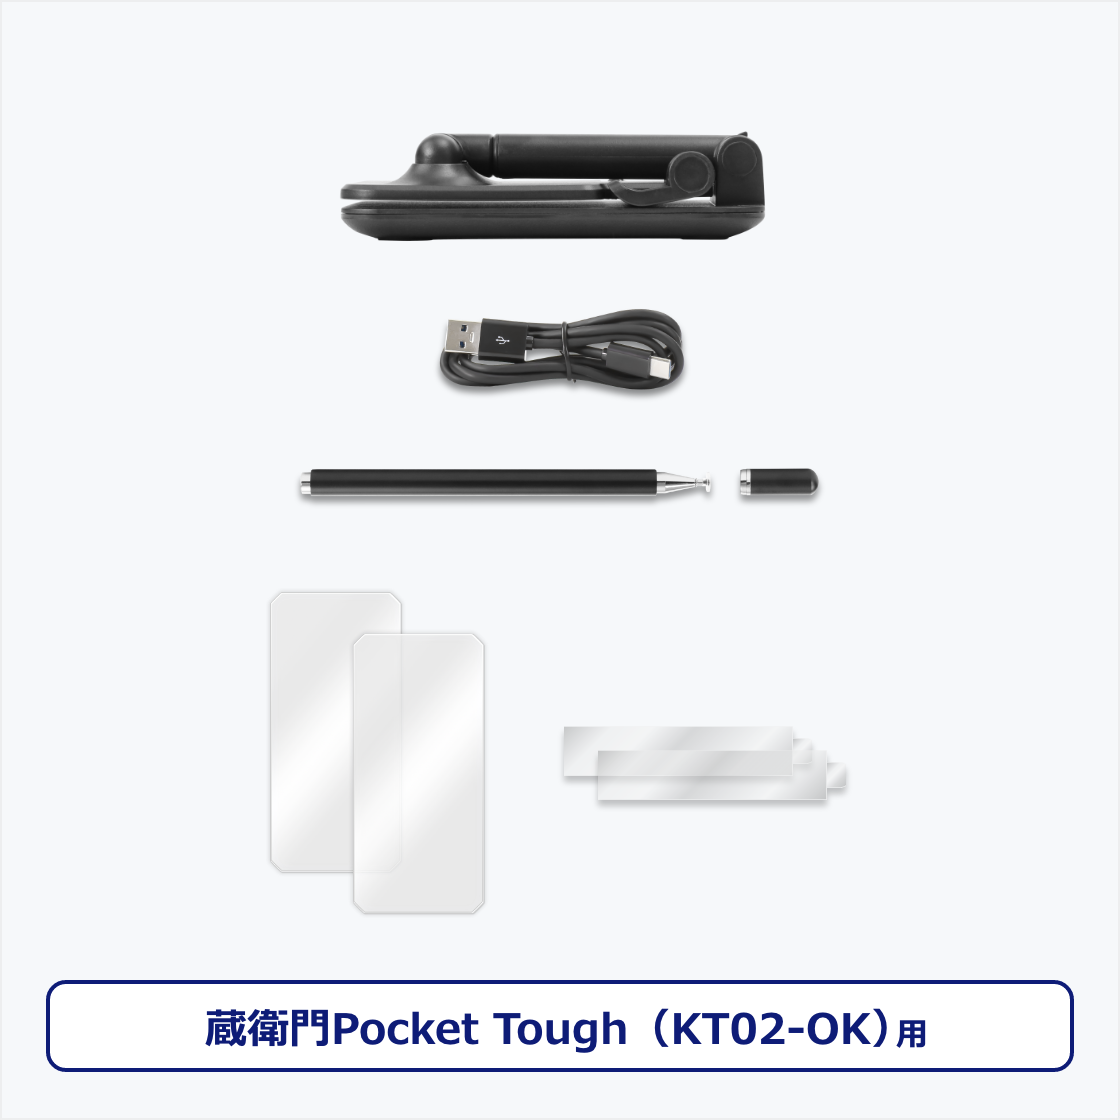 Power Kit for qPocket ToughiKT02-OKj